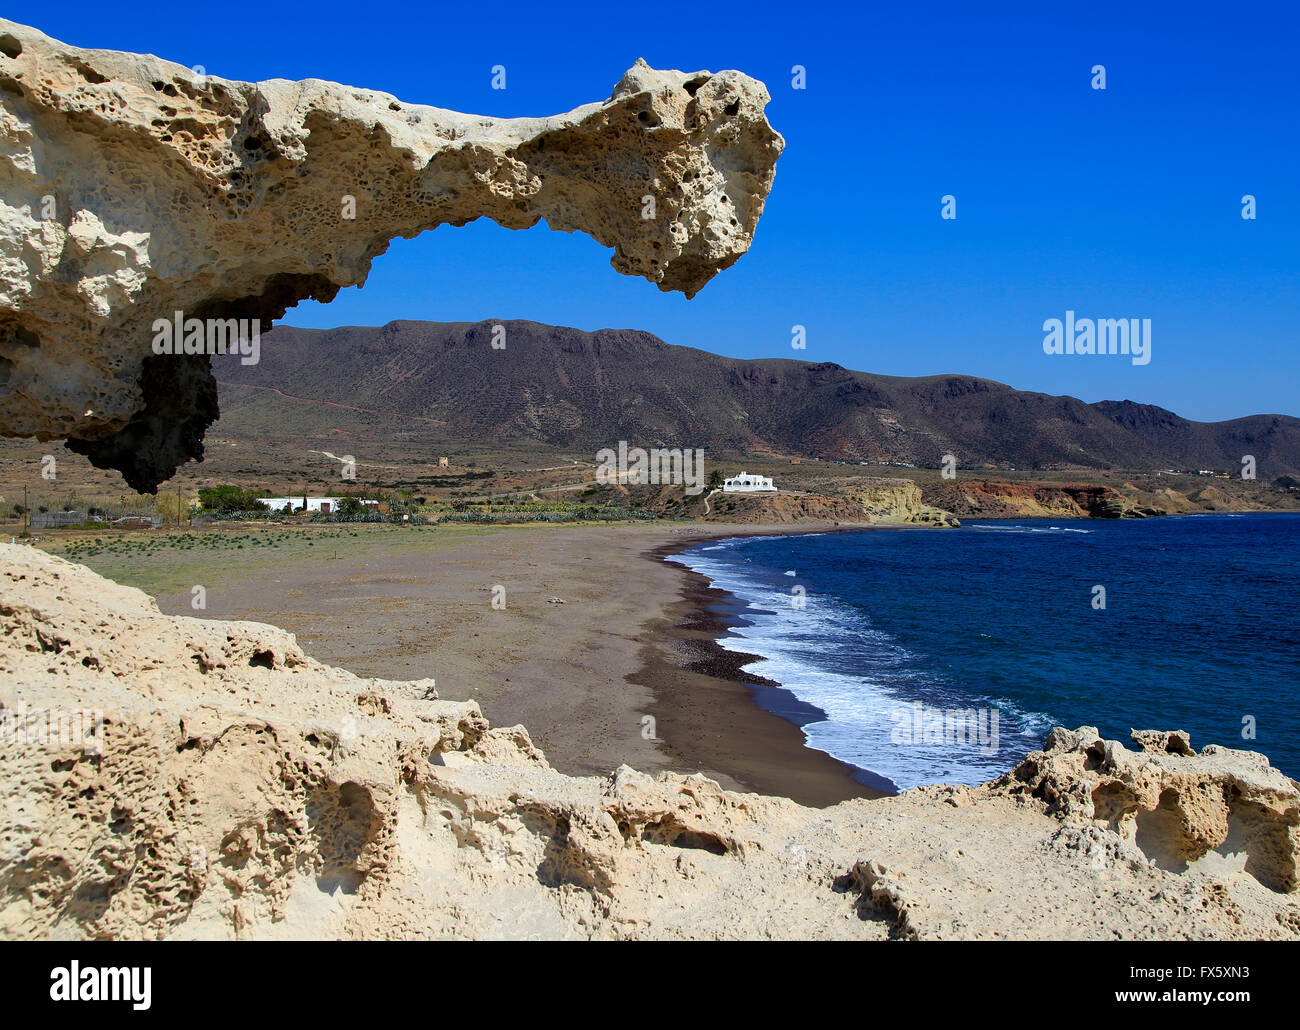 Plage et la structure rocheuse calcaire sculpté, Los Escullos, parc naturel de Cabo de Gata, Almeria, Espagne Banque D'Images